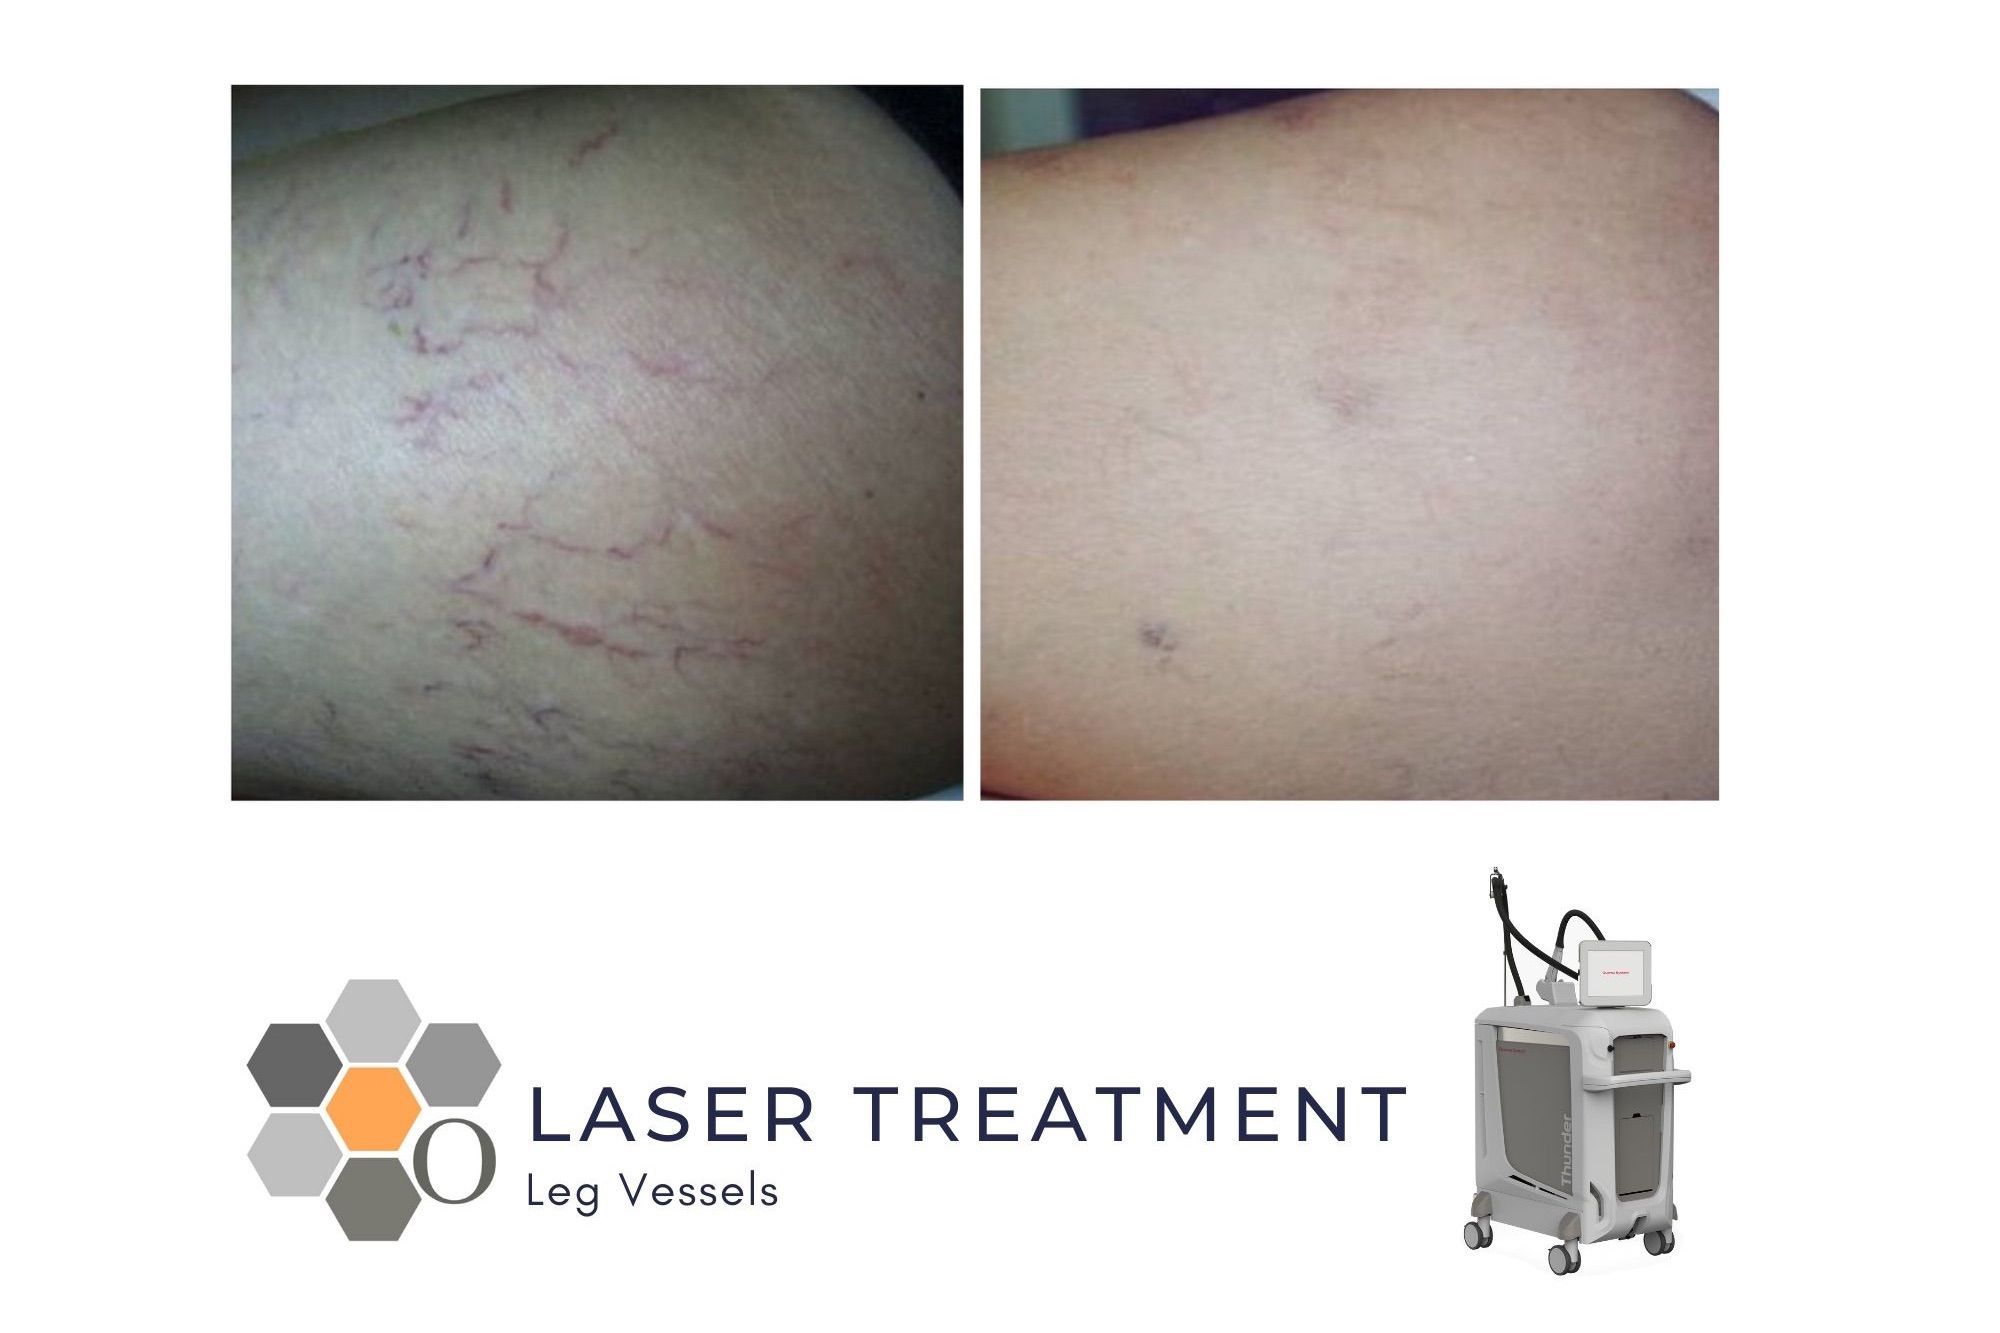 Thread Vein Laser Treatment - Leg Vessels portfolio